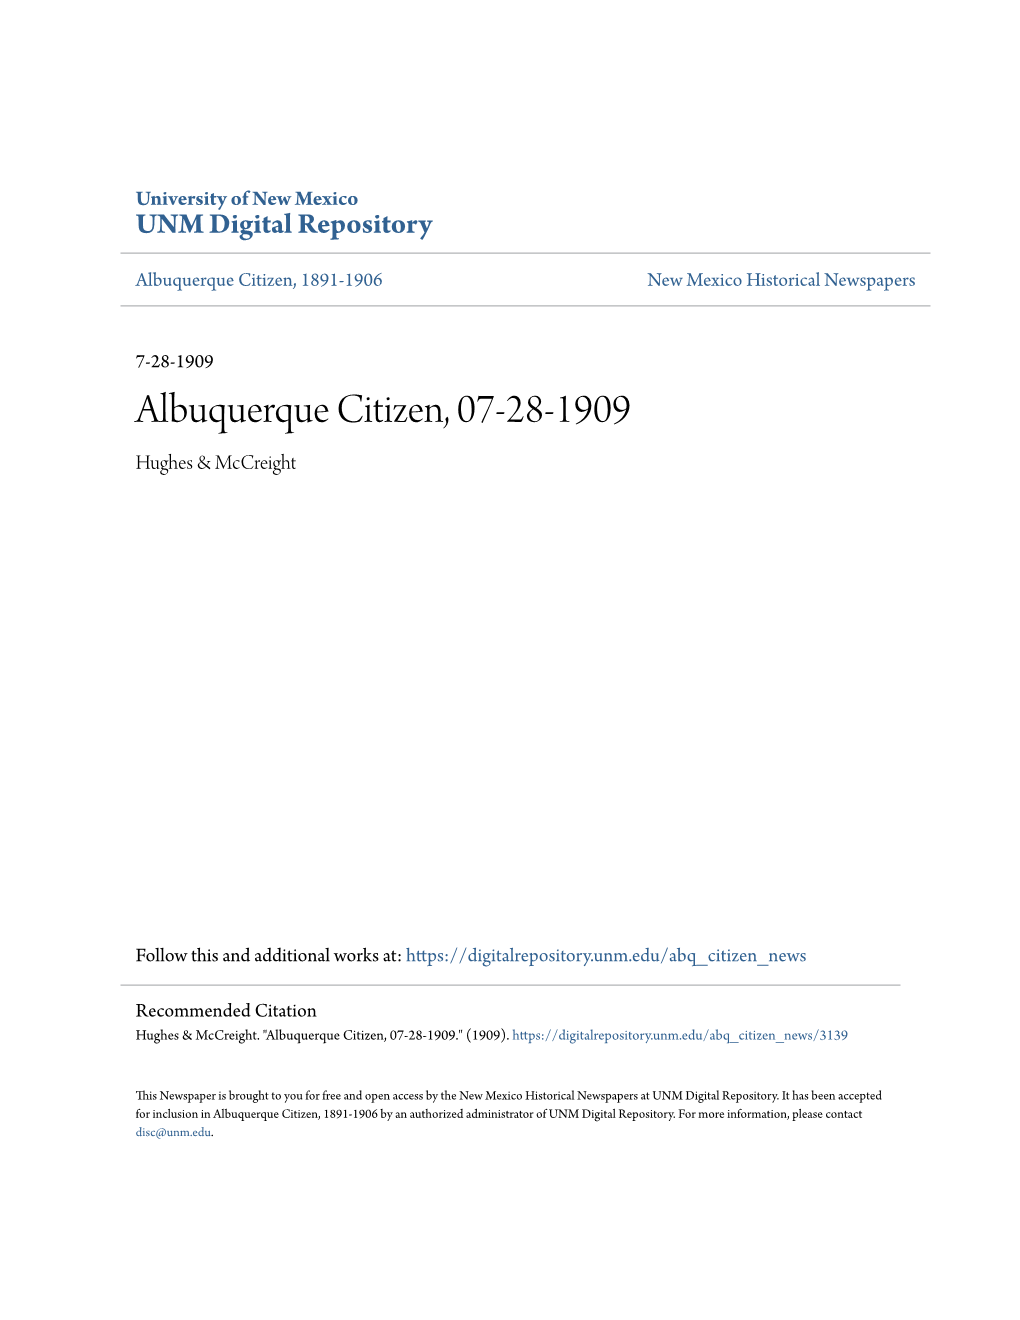 Albuquerque Citizen, 07-28-1909 Hughes & Mccreight